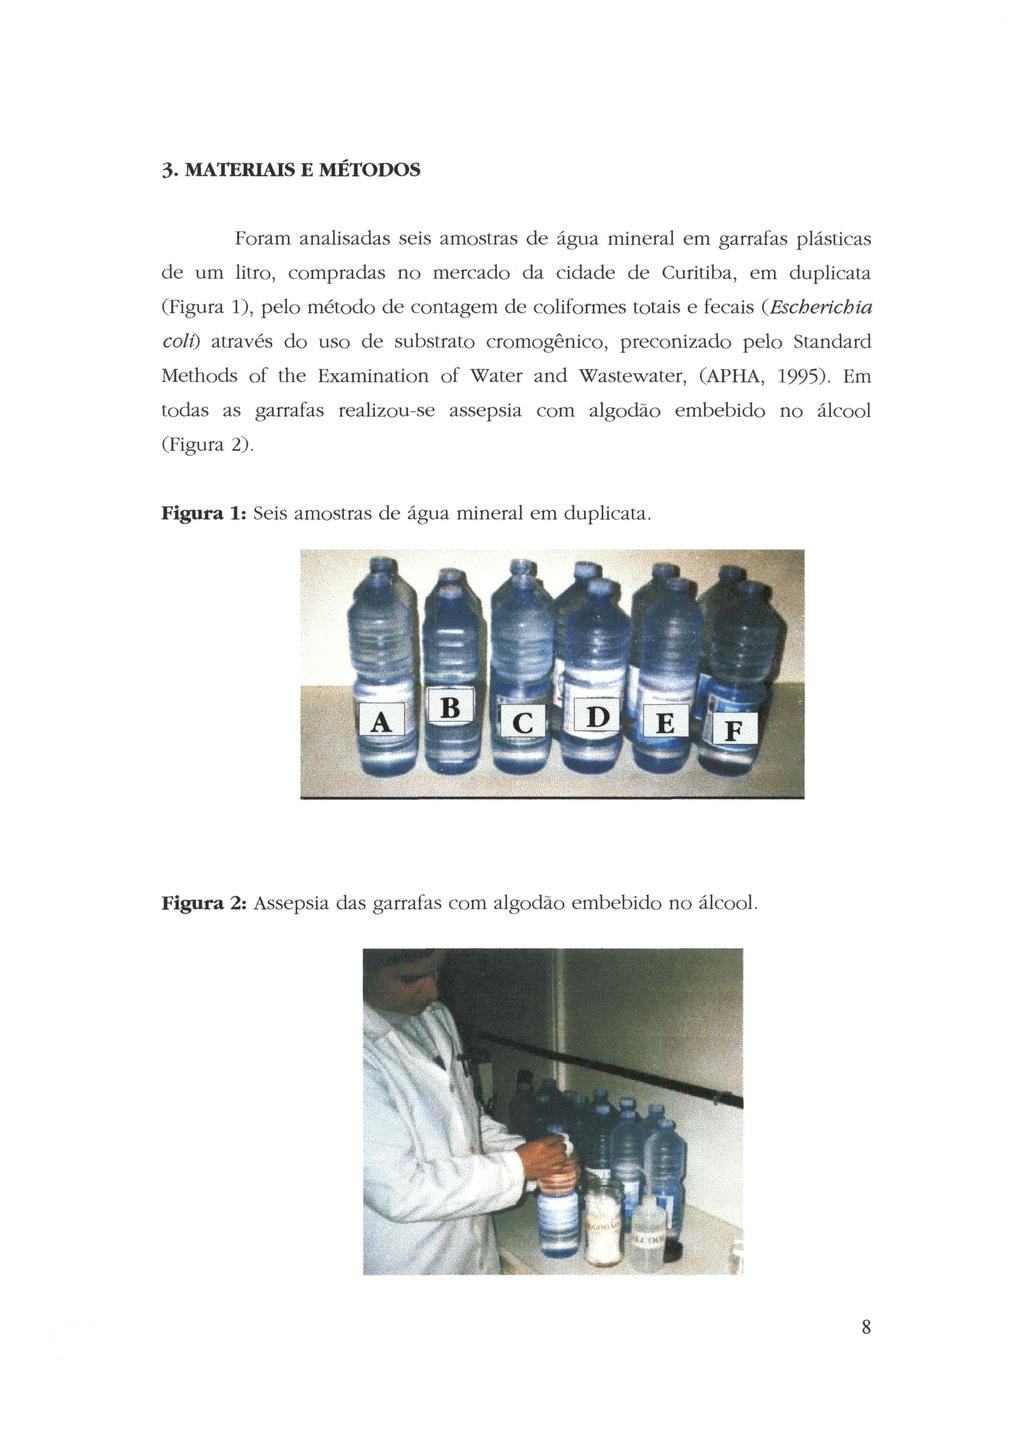 3. MATERIAIS E MÉTODOS Foram analisadas seis amostras de água mineral em garrafas plásticas de um litro, compradas no mercado da cidade de Curitiba, em duplicata (Figura 1), pelo método de contagem